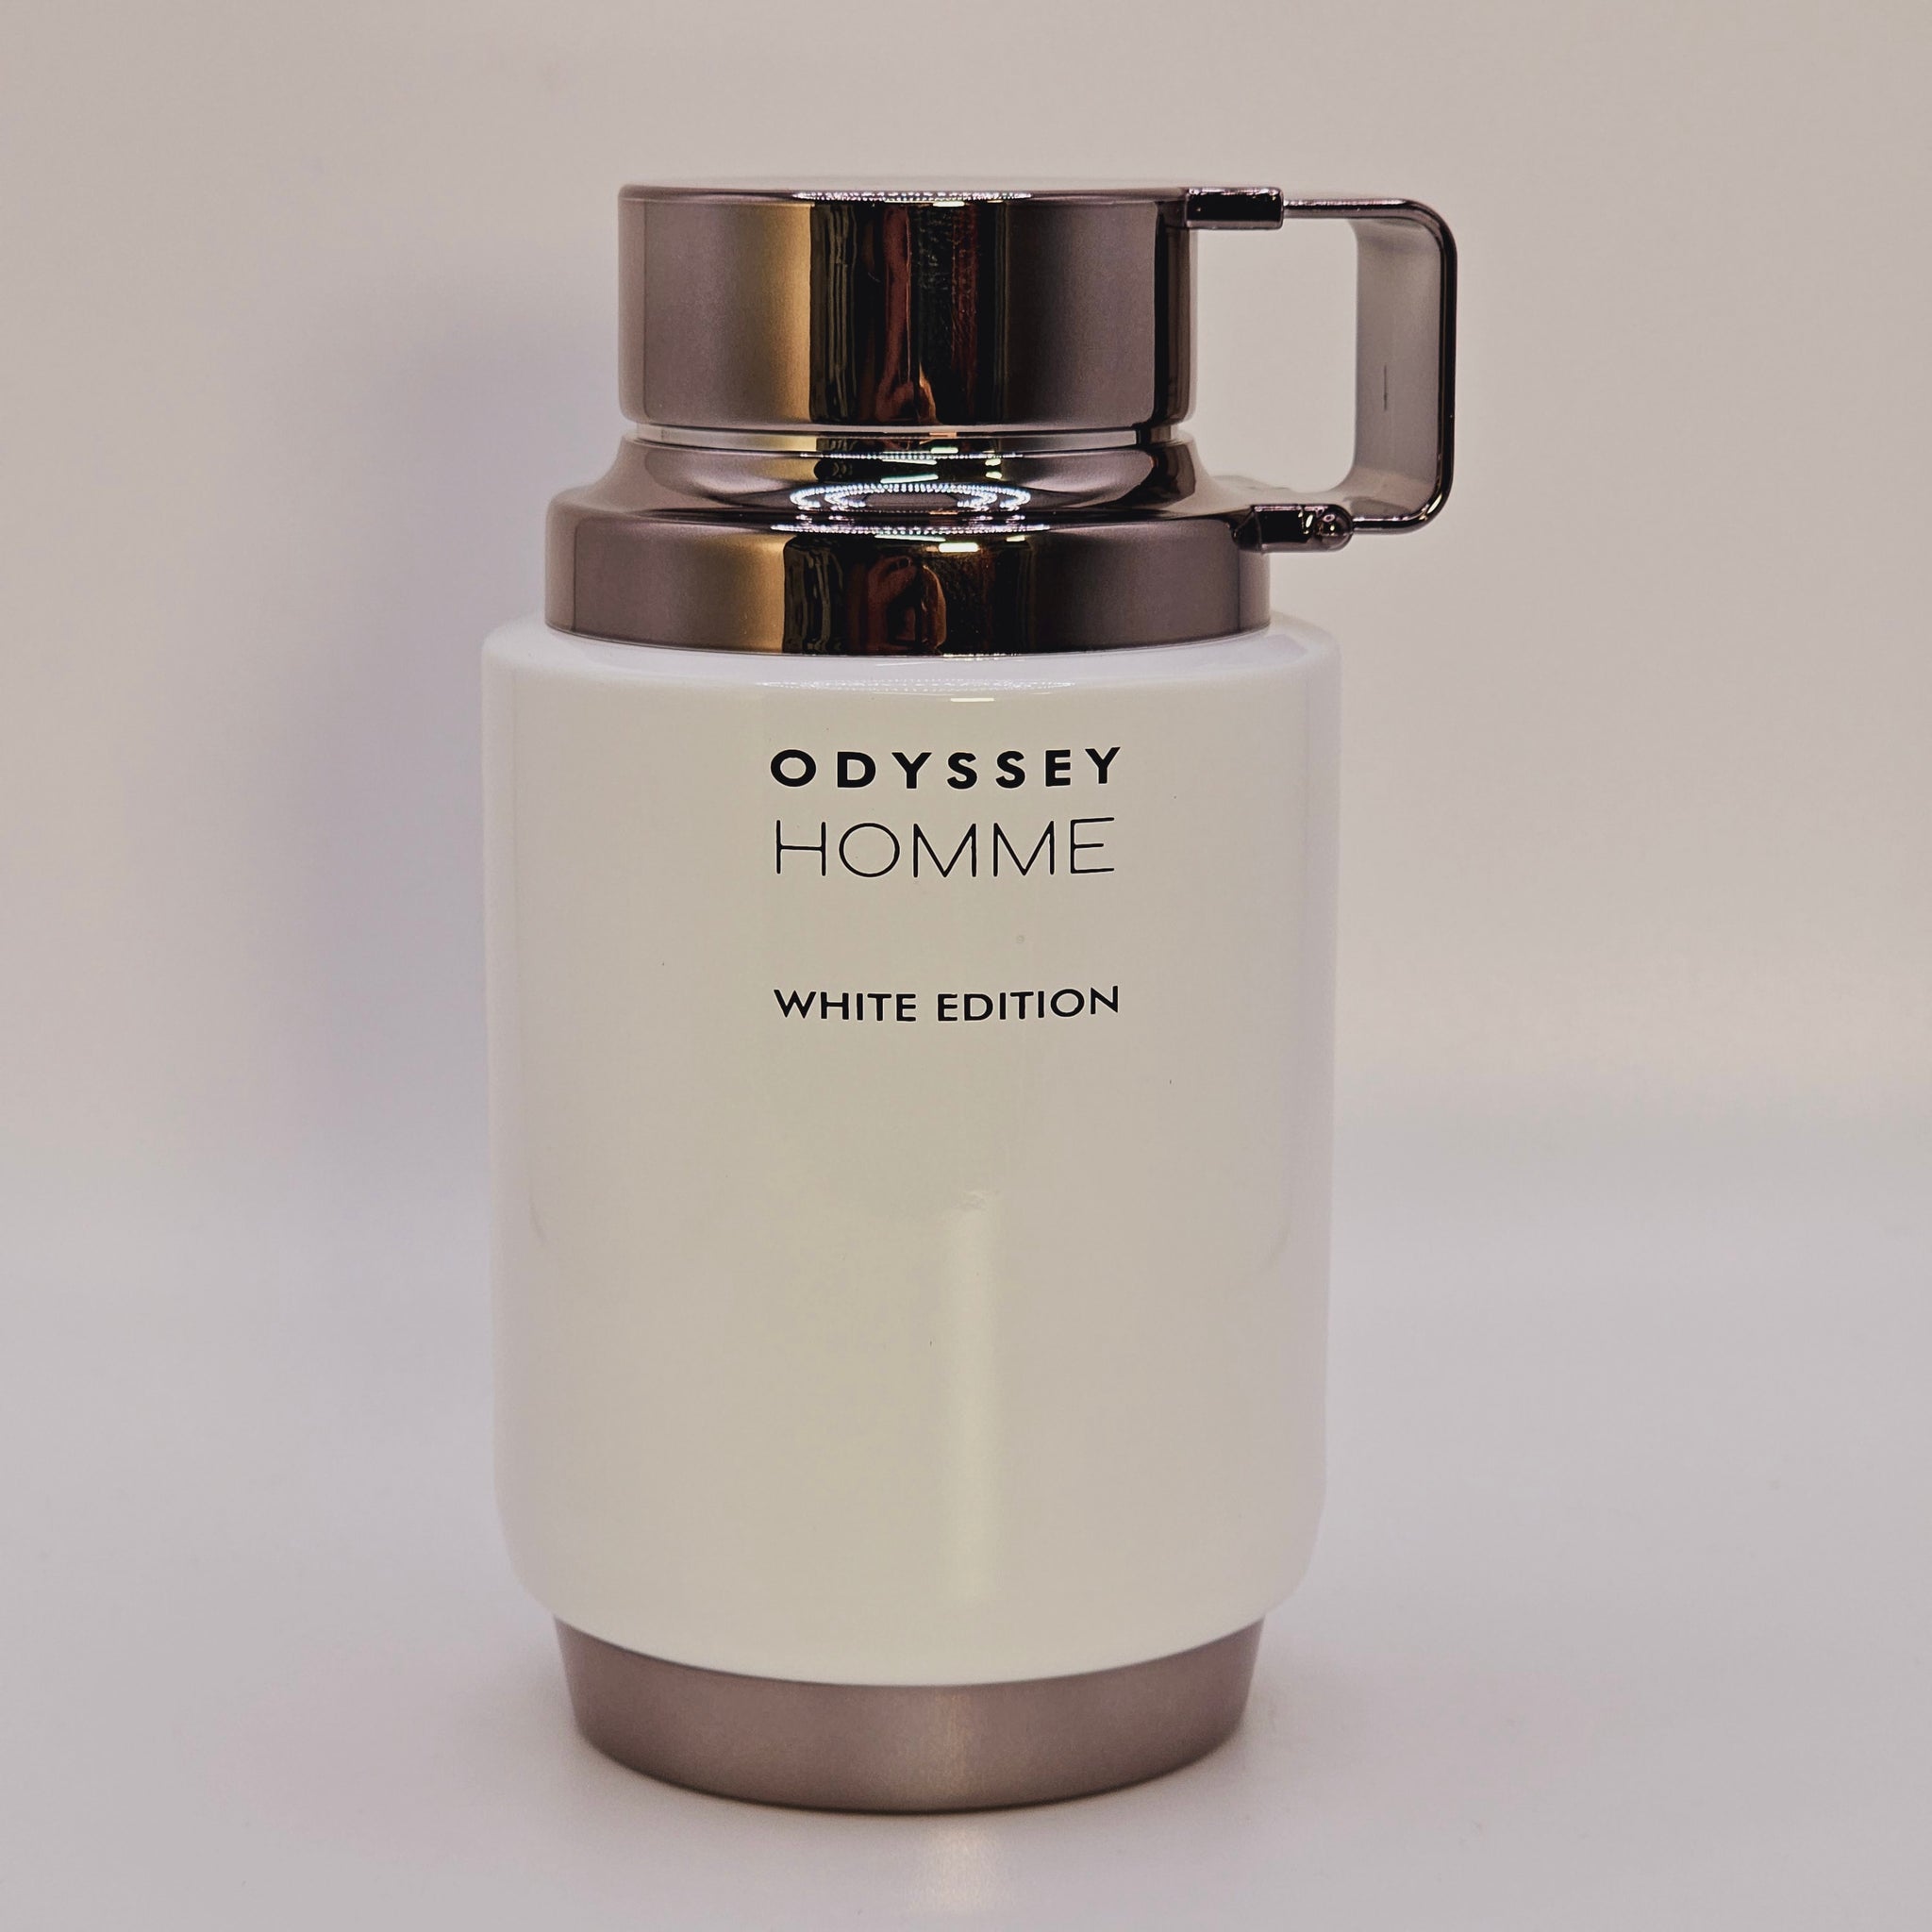 Odyssey Homme White Edition For Men's Eau De Parfum Spray 6.8 Oz/200 ML Fragrances